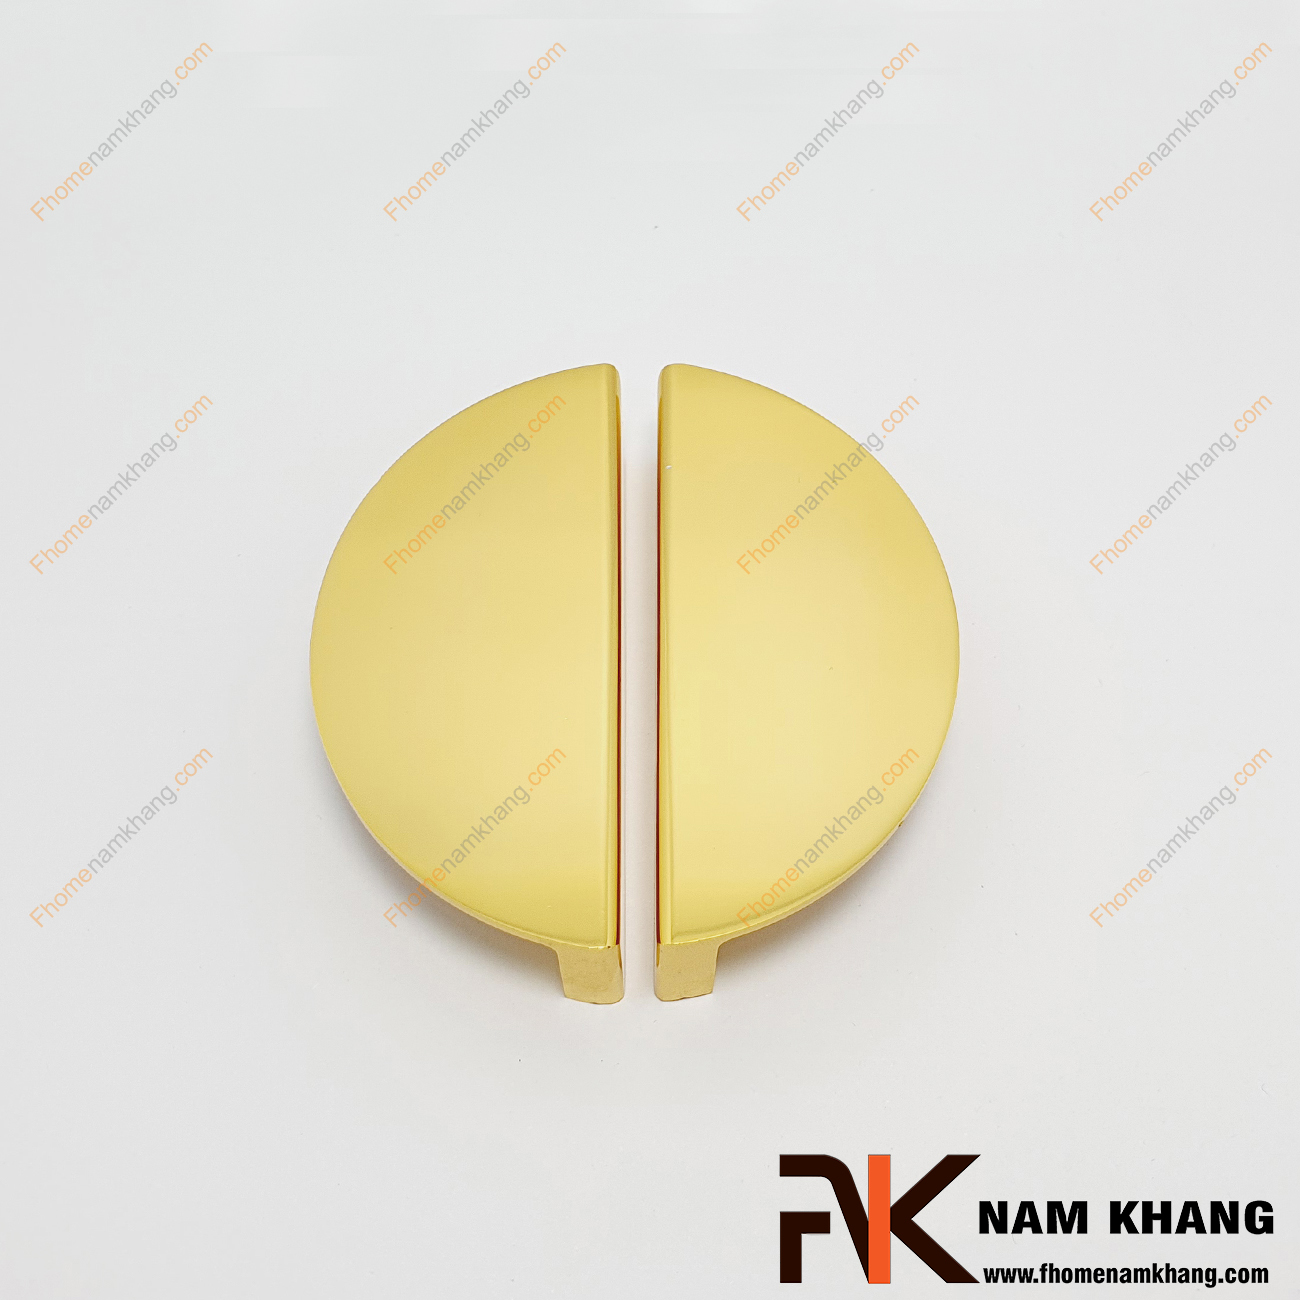 Tay nắm tủ dạng bán nguyệt màu vàng xước ánh kim NK286BN-64V kiểu dáng tay nắm tủ dạng đôi hình bán nguyệt. Đây là dòng sản phẩm thường sử dụng cặp hoặc tách lẻ có thể lắp đặt trên nhiều chất liệu cửa và không gian khác nhau.